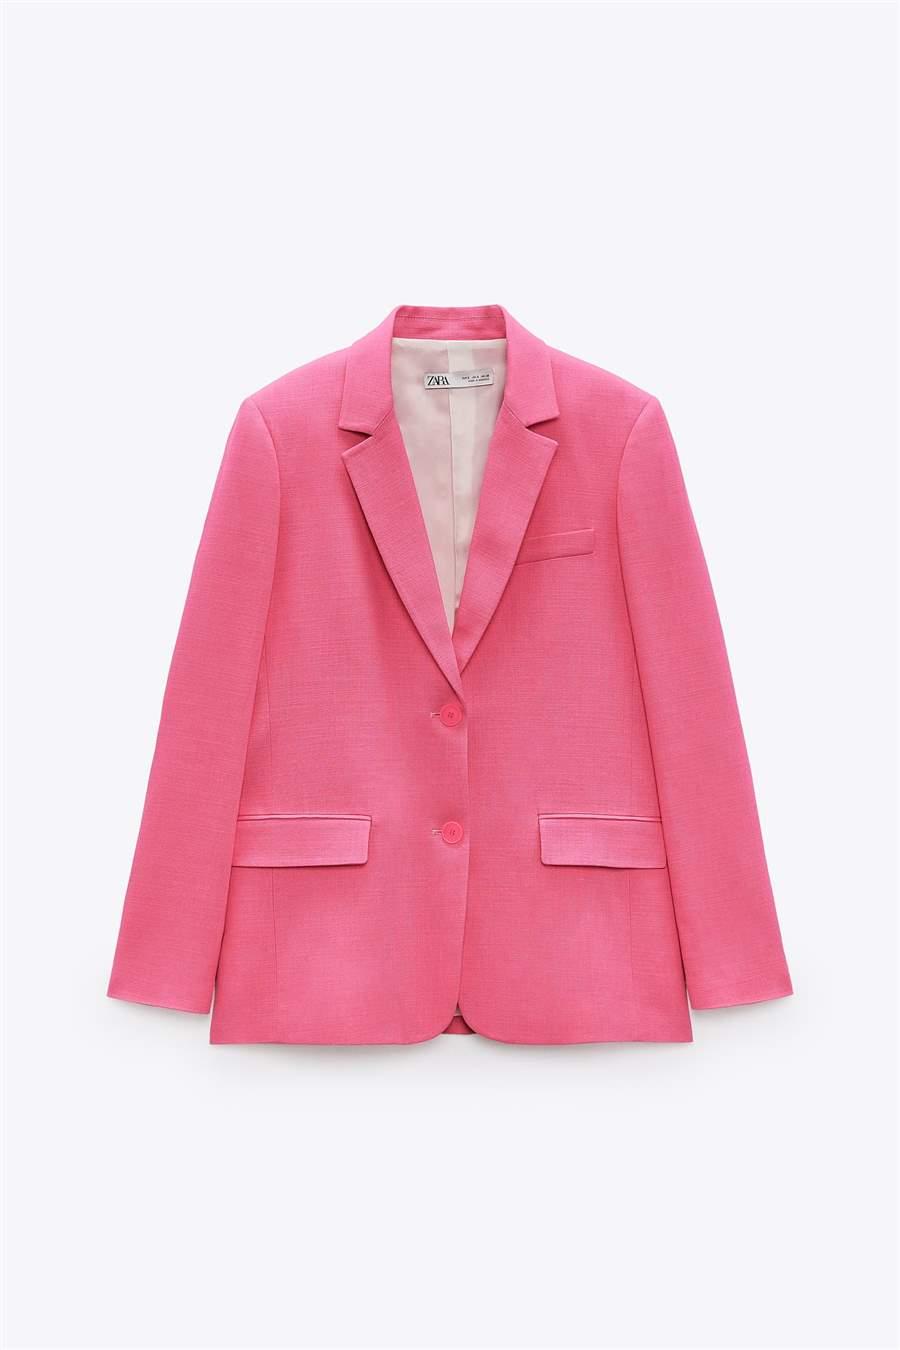 Tamara Falcó se une a la tendencia del traje de chaqueta rosa